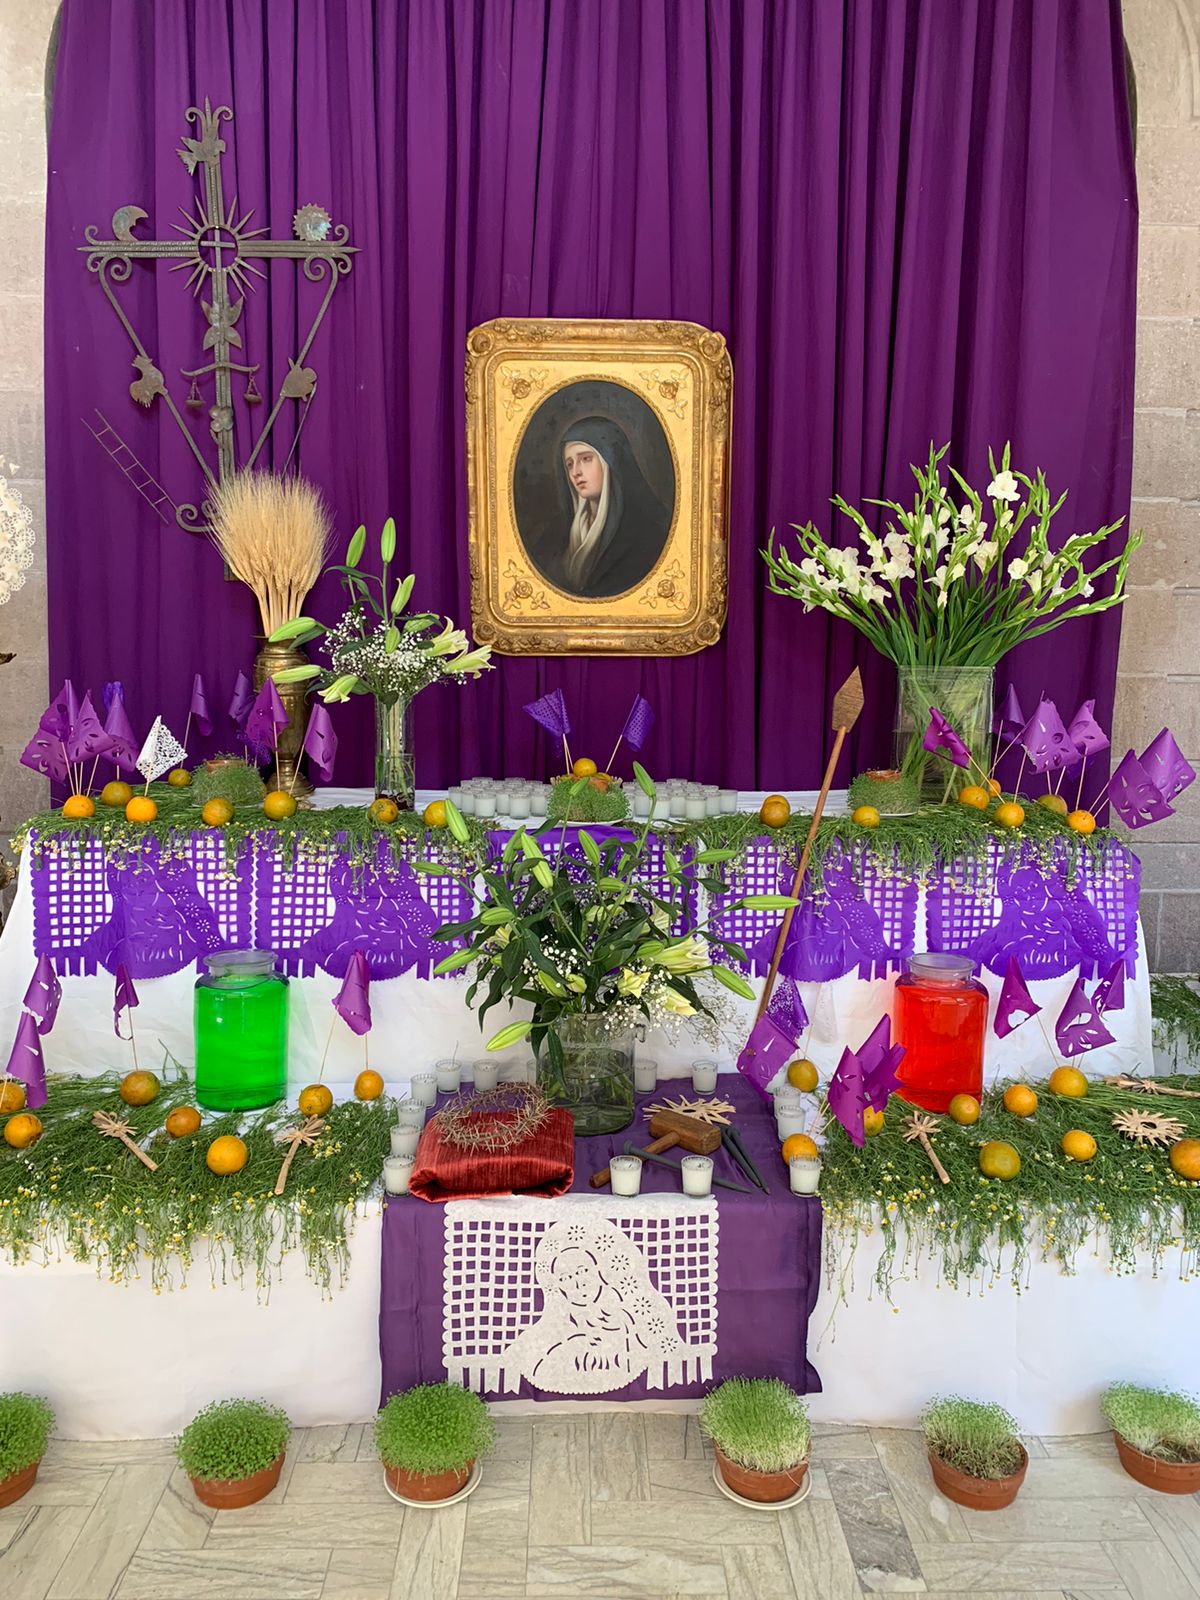 Invitan a visitar el altar de Dolores del Museo Francisco Cossío